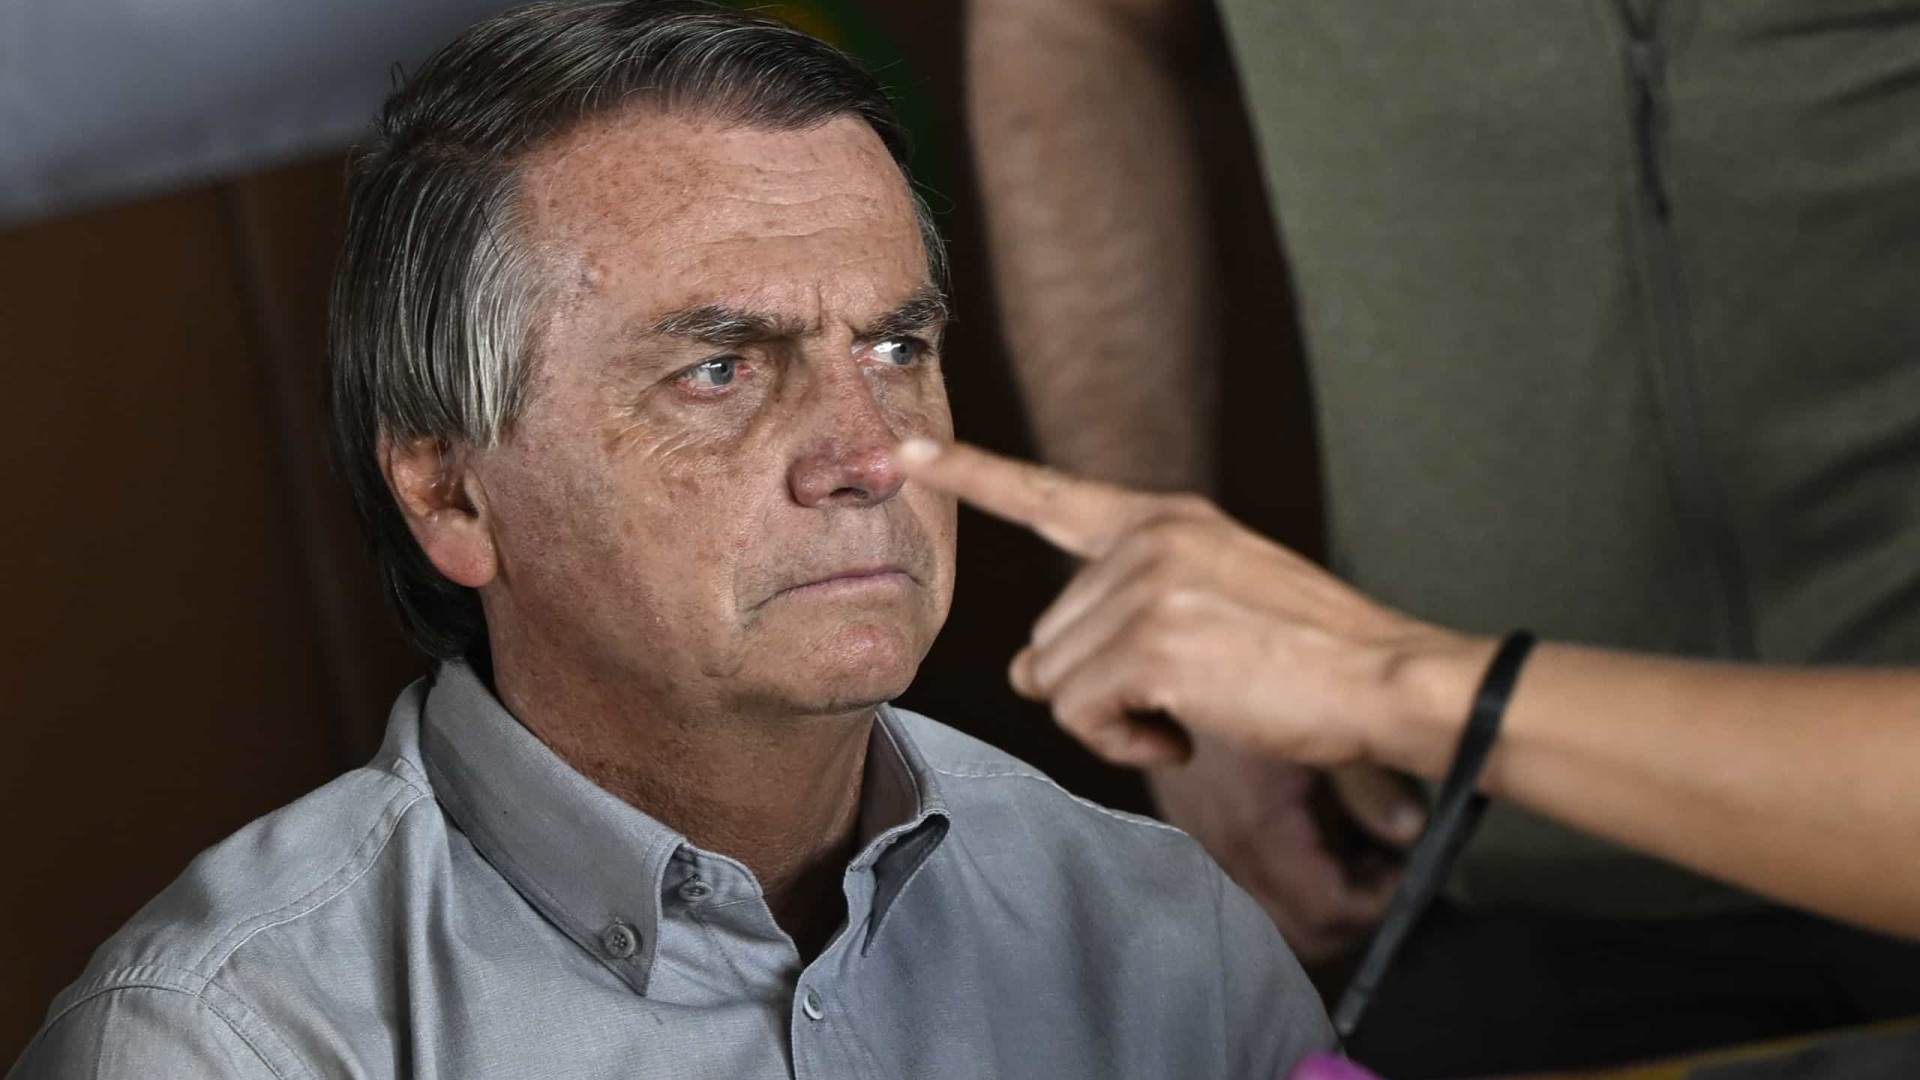 Apoiadores xingam Bolsonaro após live de despedida do presidente